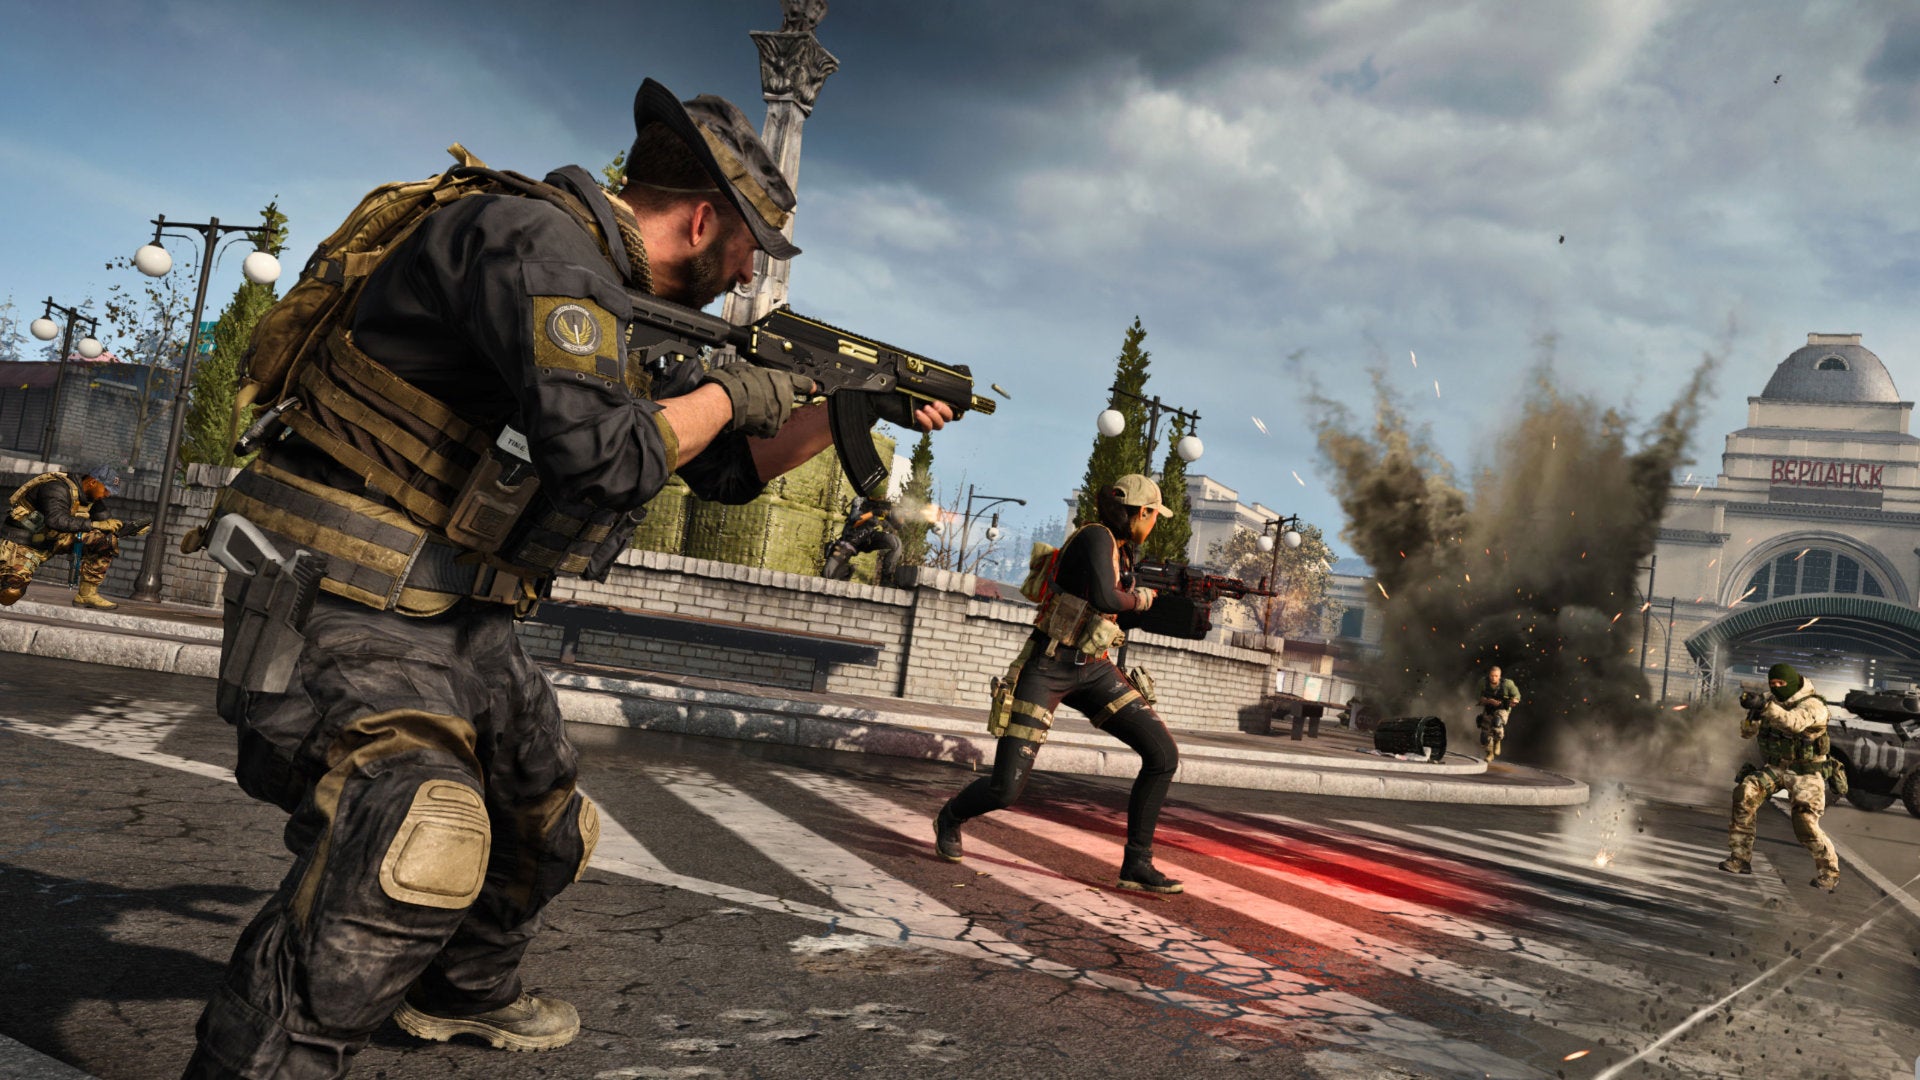 Um tiroteio começa perto da estação de trem em Call Of Duty: Warzone.